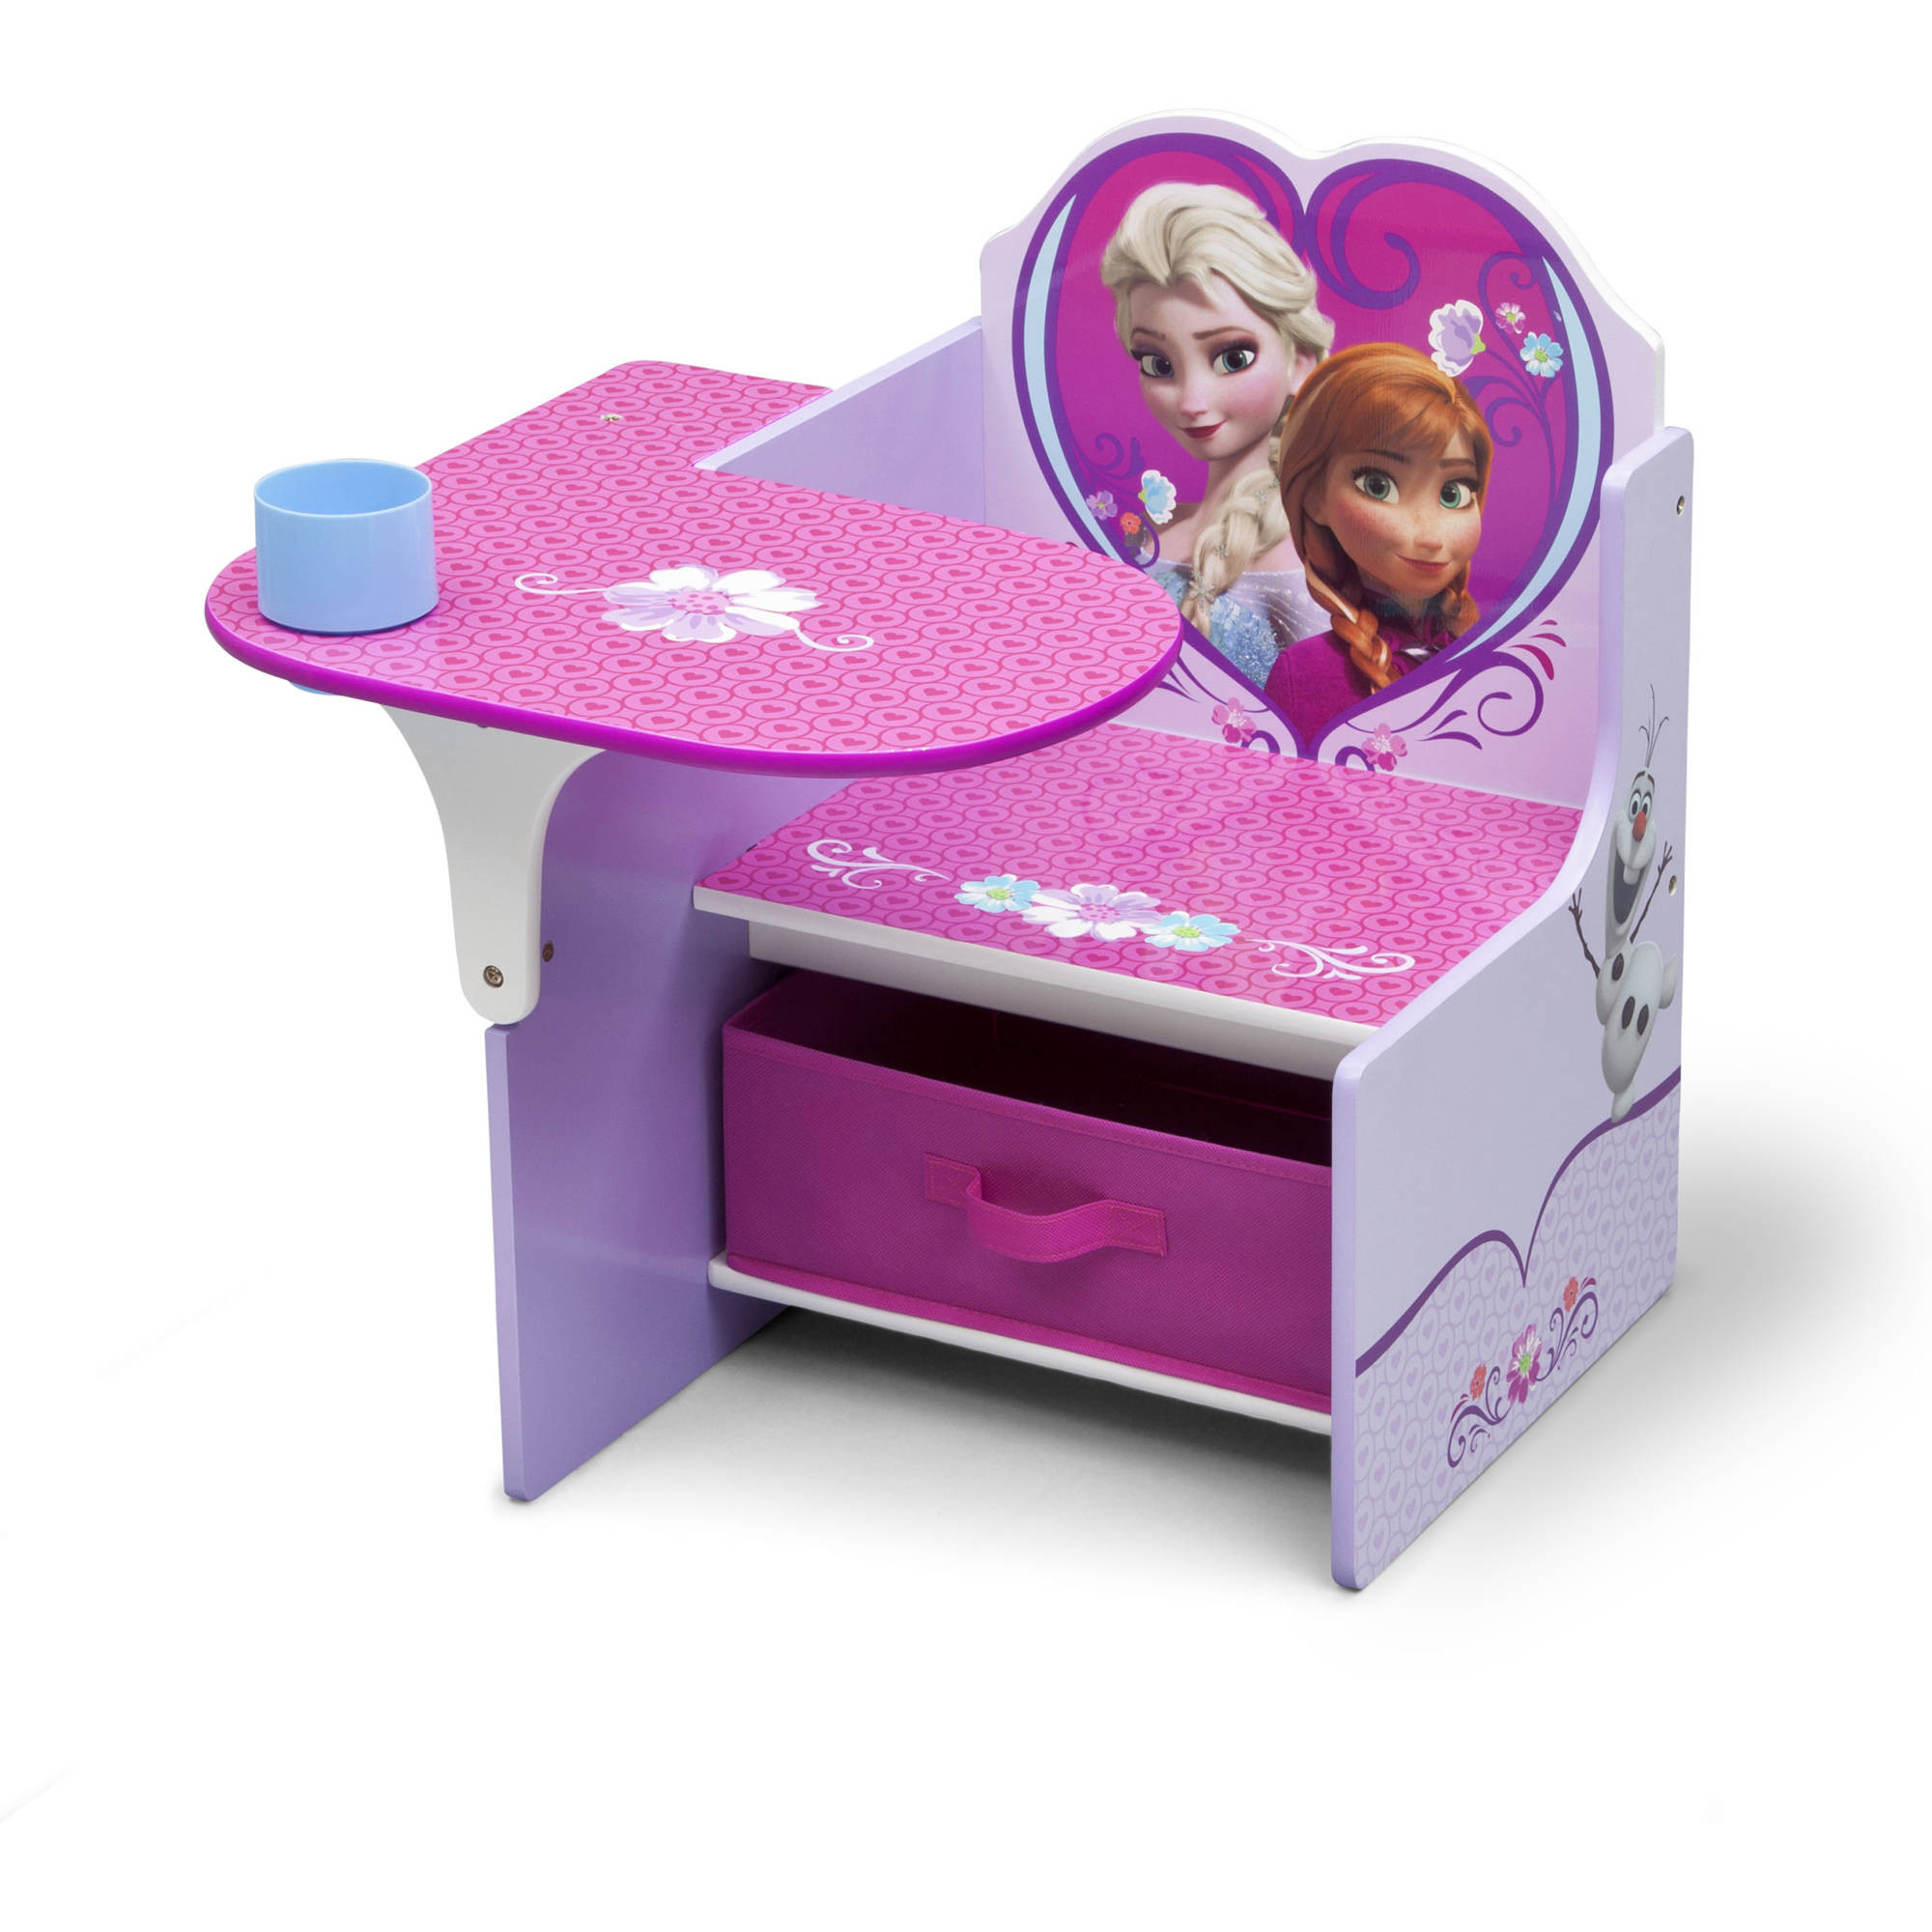 Children Desk With Storage
 Disney Frozen Chair Desk with Storage Bin by Delta